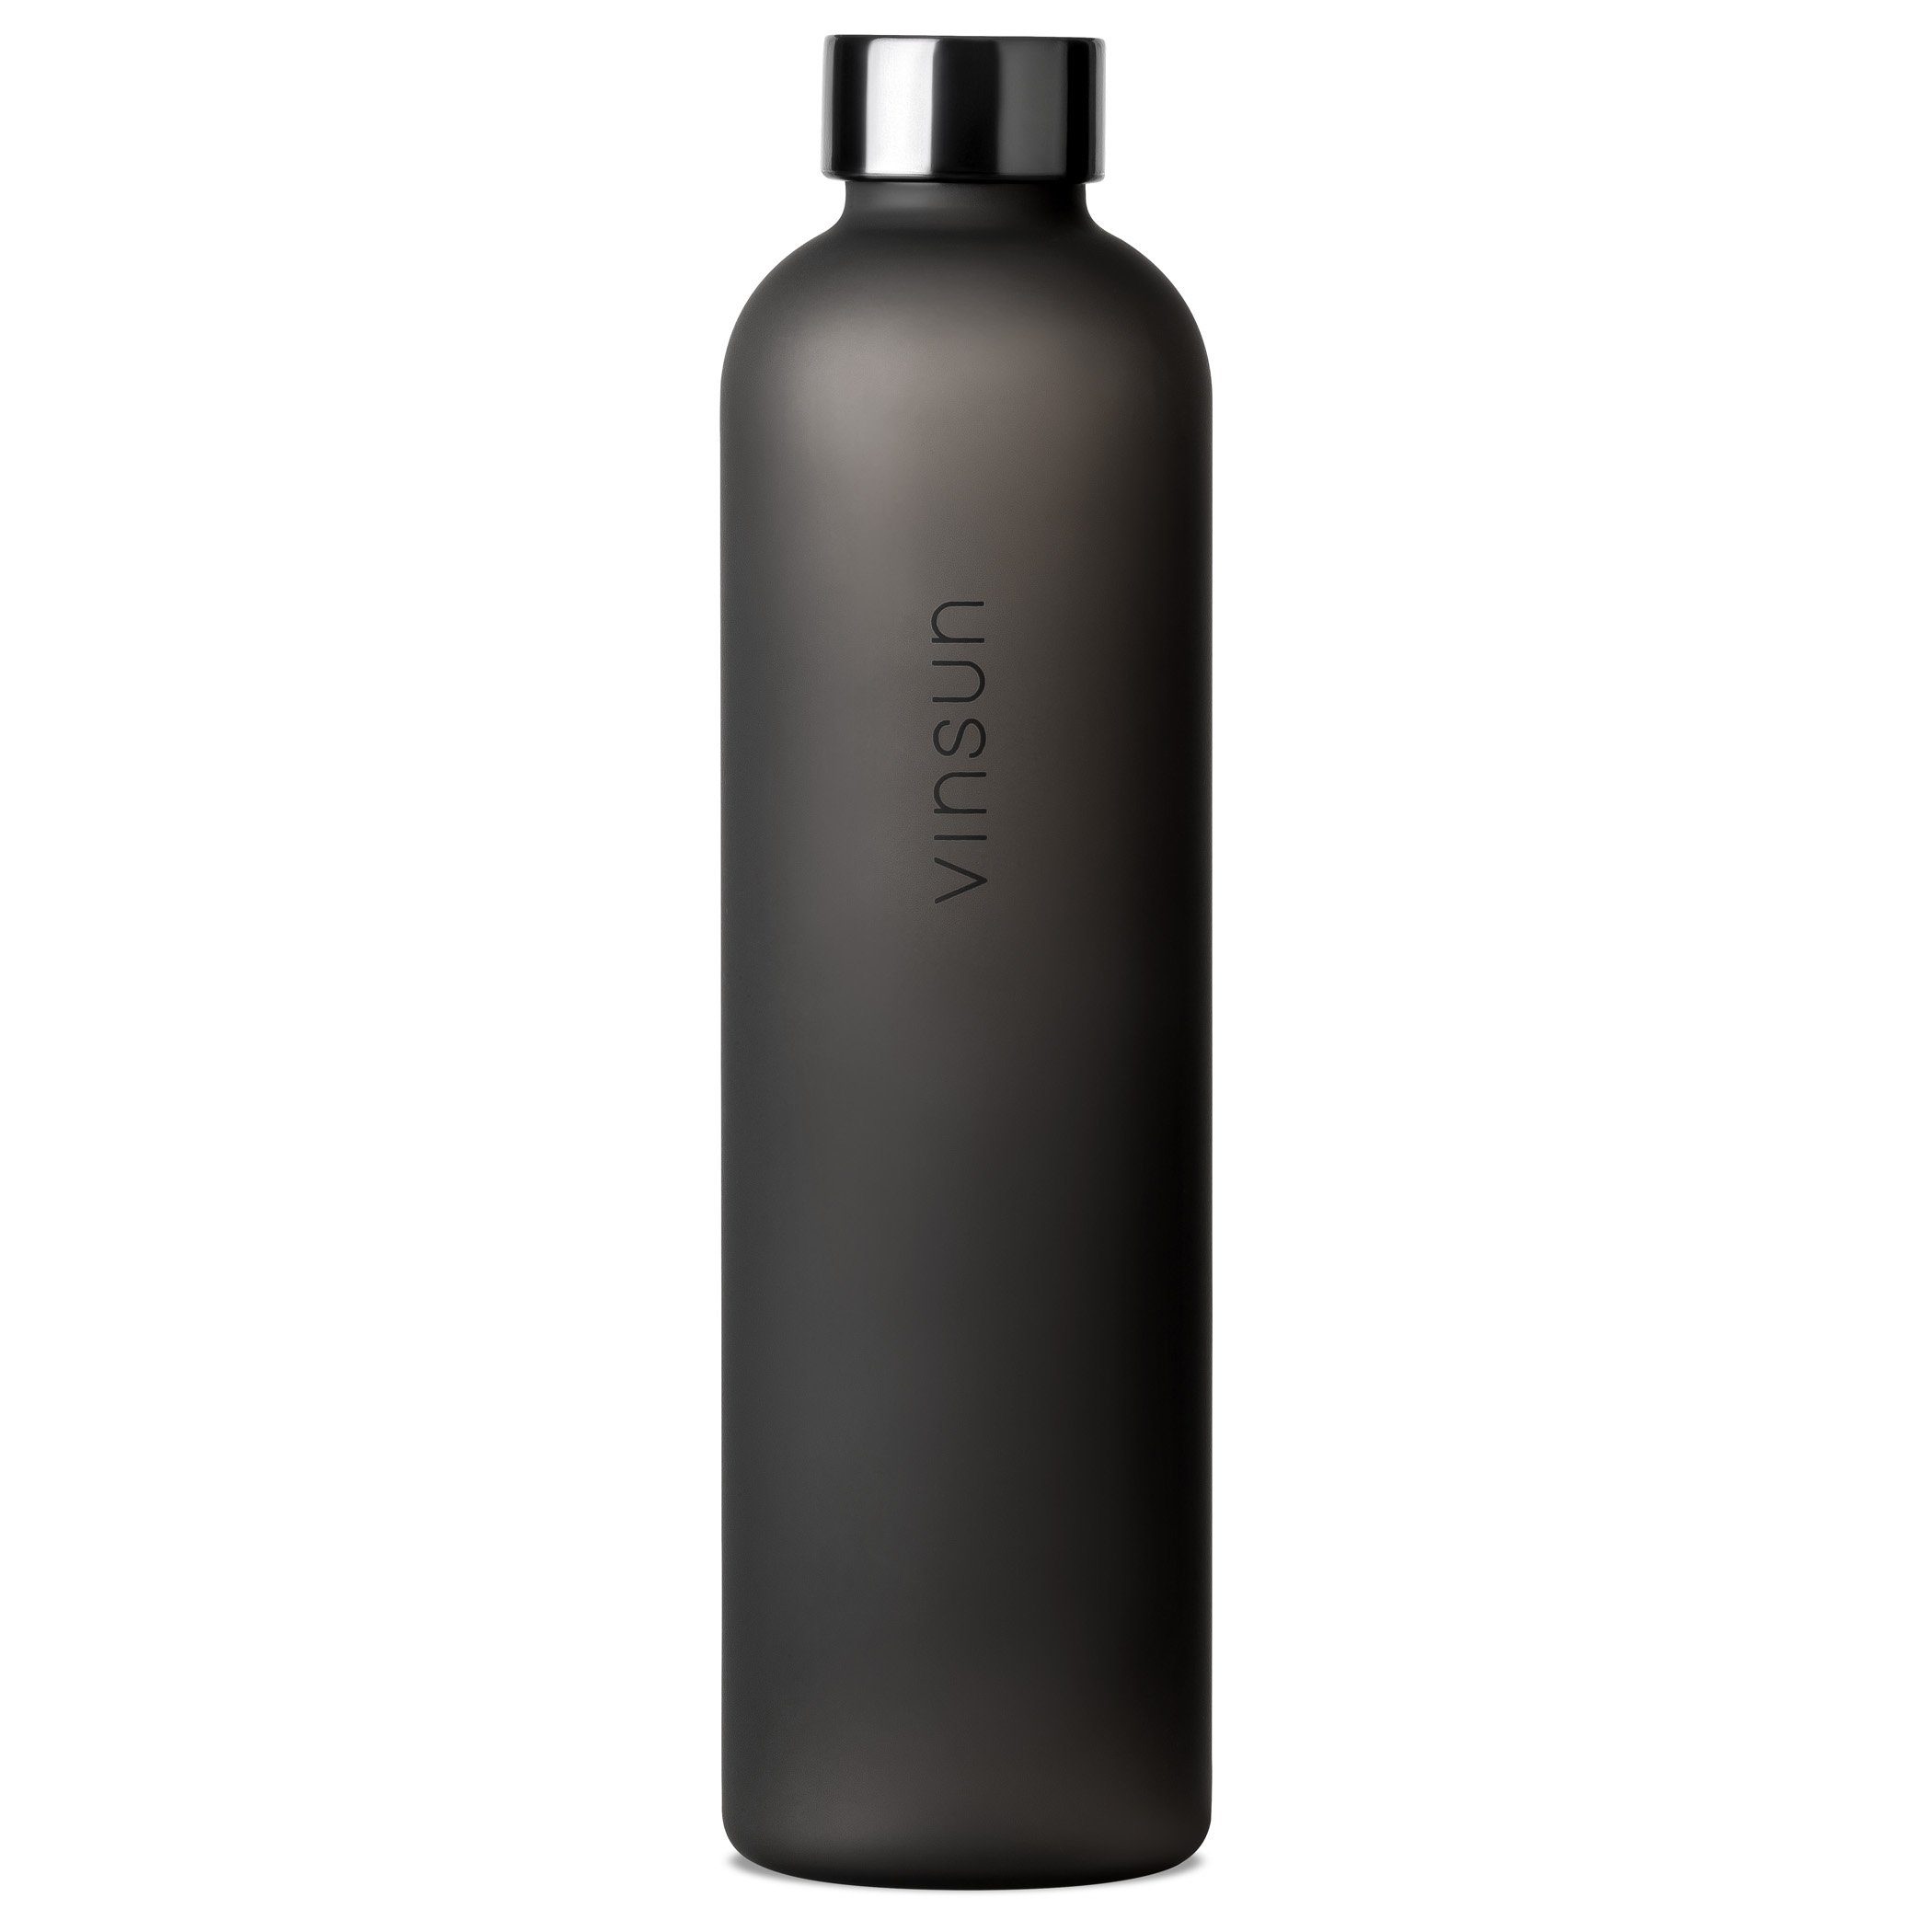 Vinsun Trinkflasche Trinkflasche 1L - Kohlensäure geeignet, auslaufsicher - Wasserflasche, BPA frei, bruchsicher, Geruchs- und Geschmacksneutral, auslaufsicher Schwarz